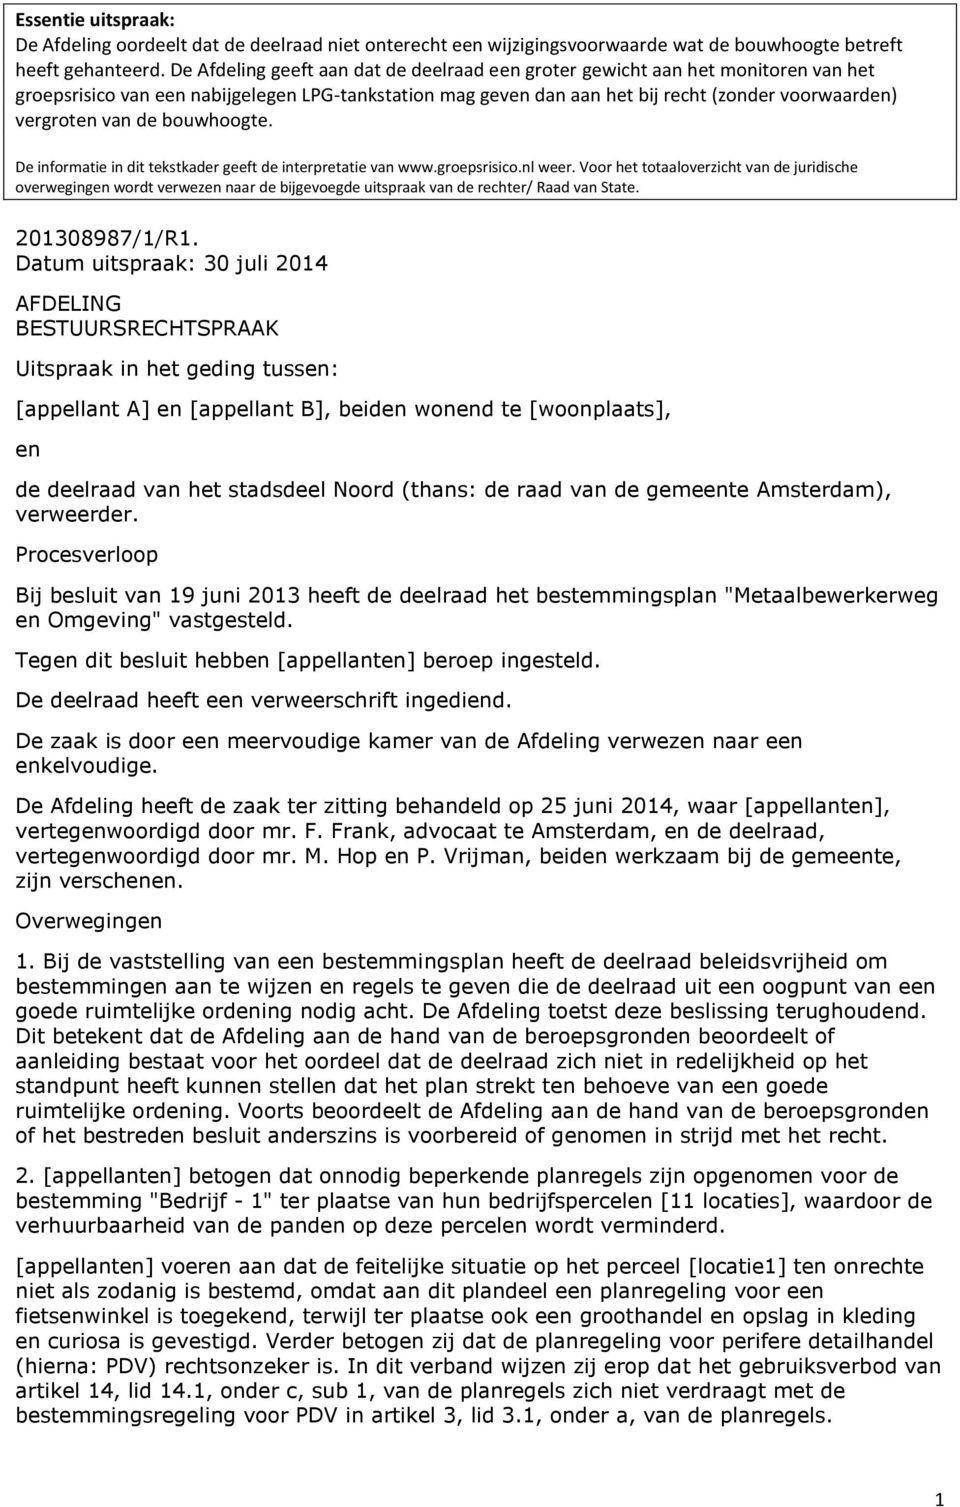 de bouwhoogte. De informatie in dit tekstkader geeft de interpretatie van www.groepsrisico.nl weer.